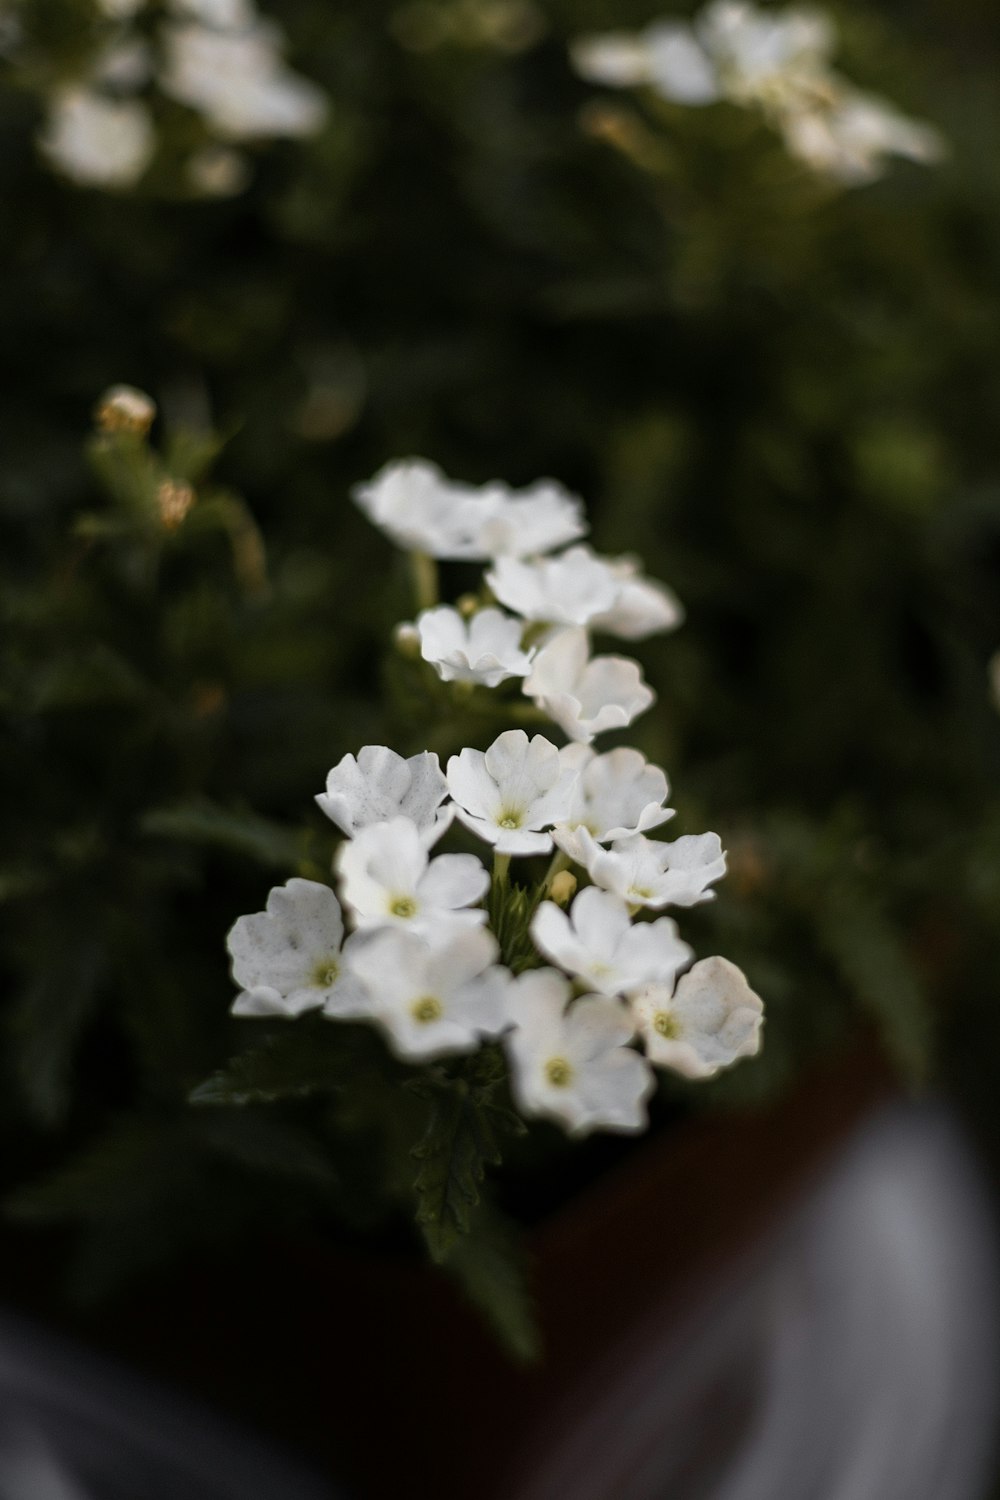 piccoli fiori bianchi in una pentola su un tavolo